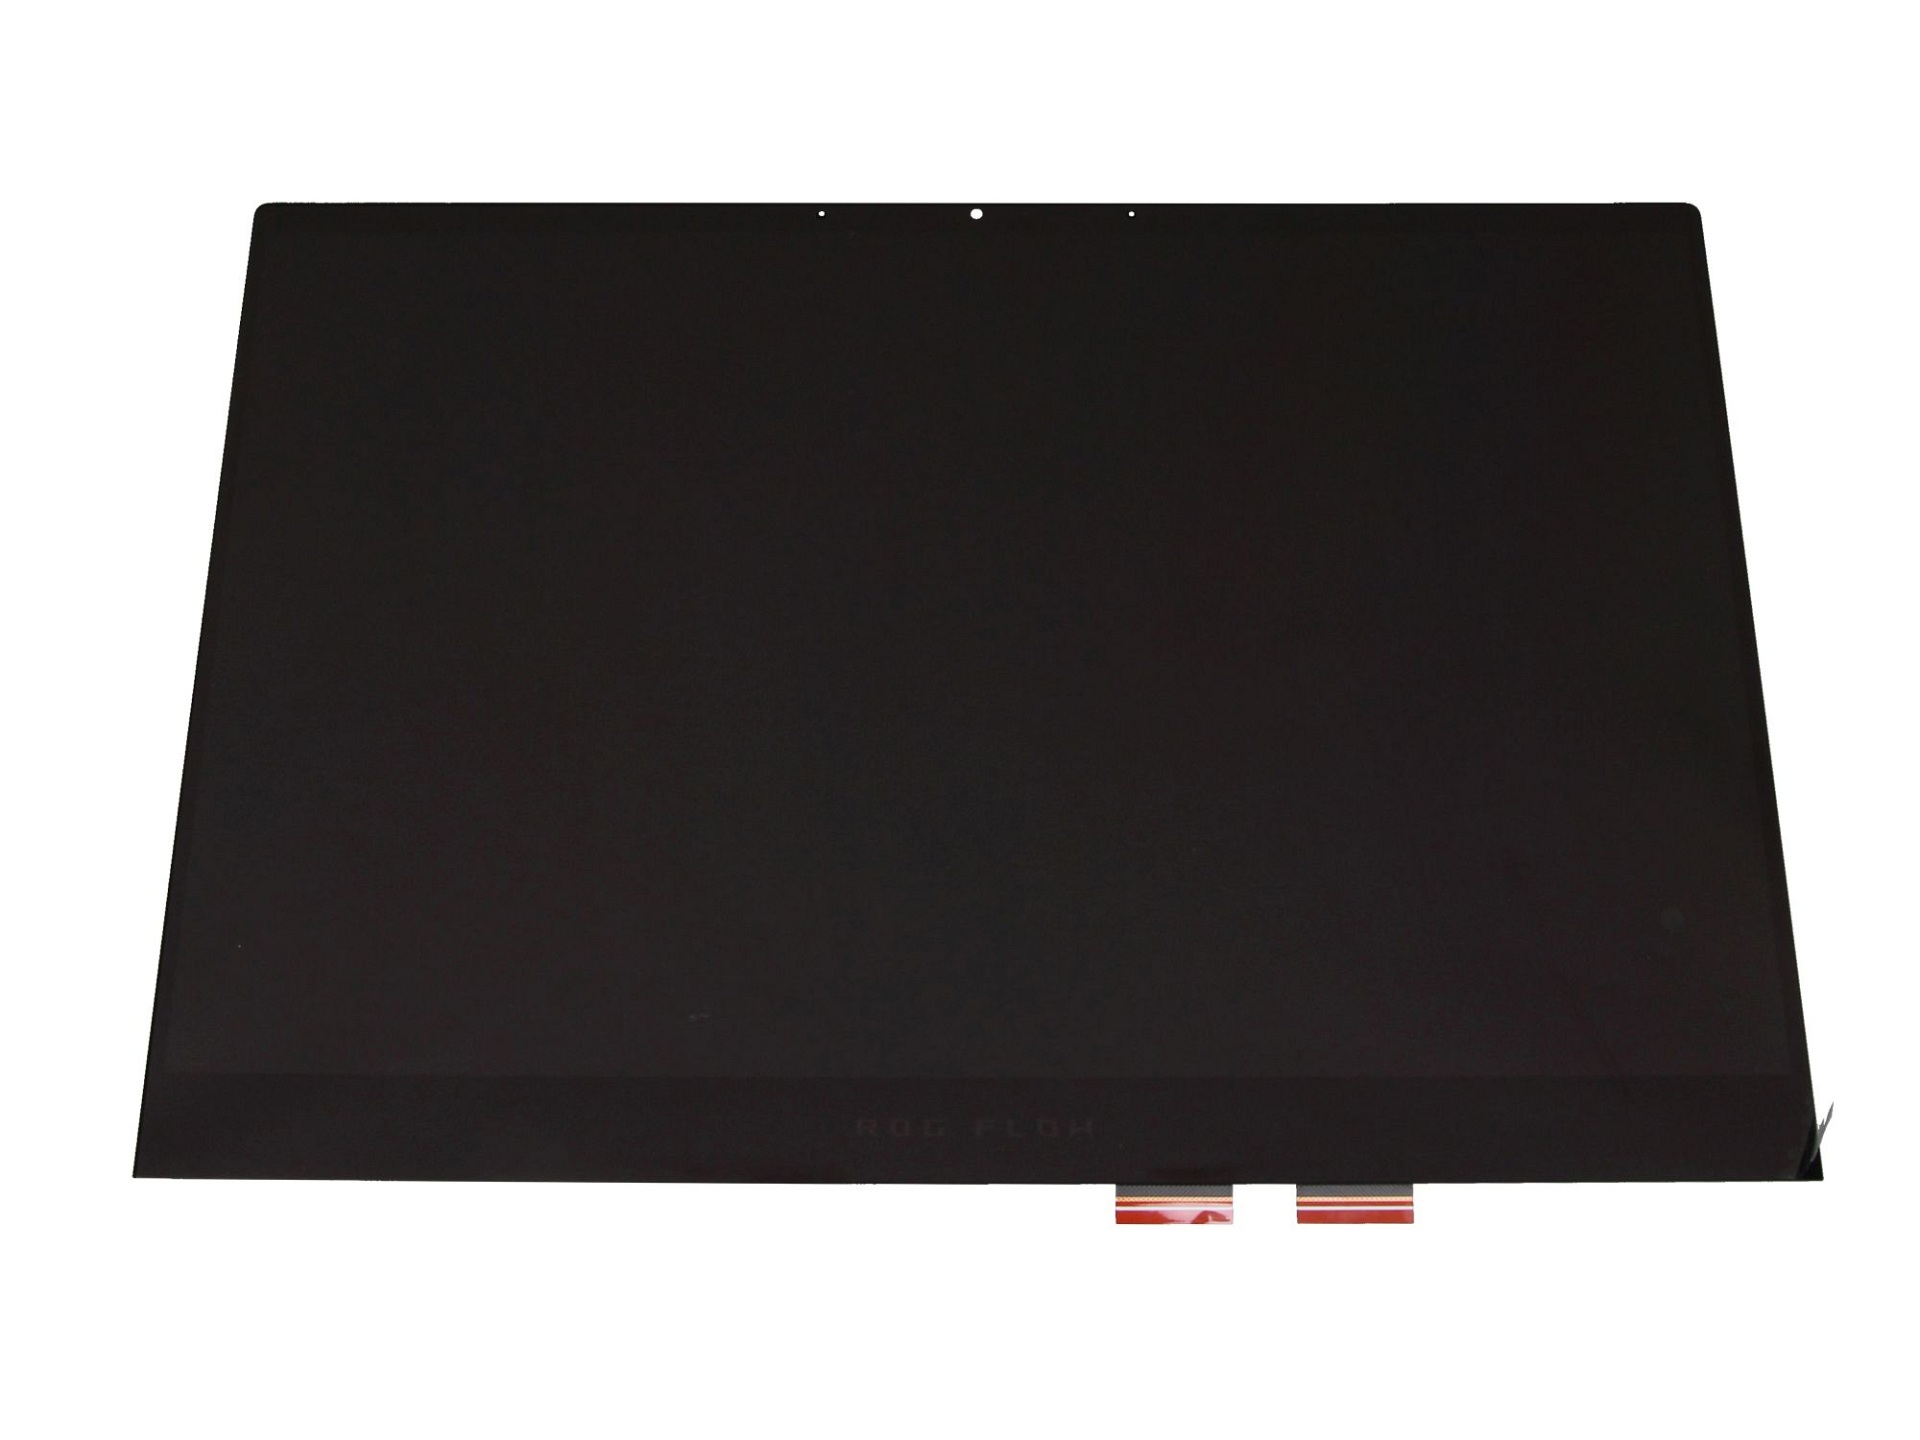 Asus 18100-13400200 Touch-Displayeinheit 13,4 Zoll (WUXGA 1920x1200) schwarz (120 Hz)